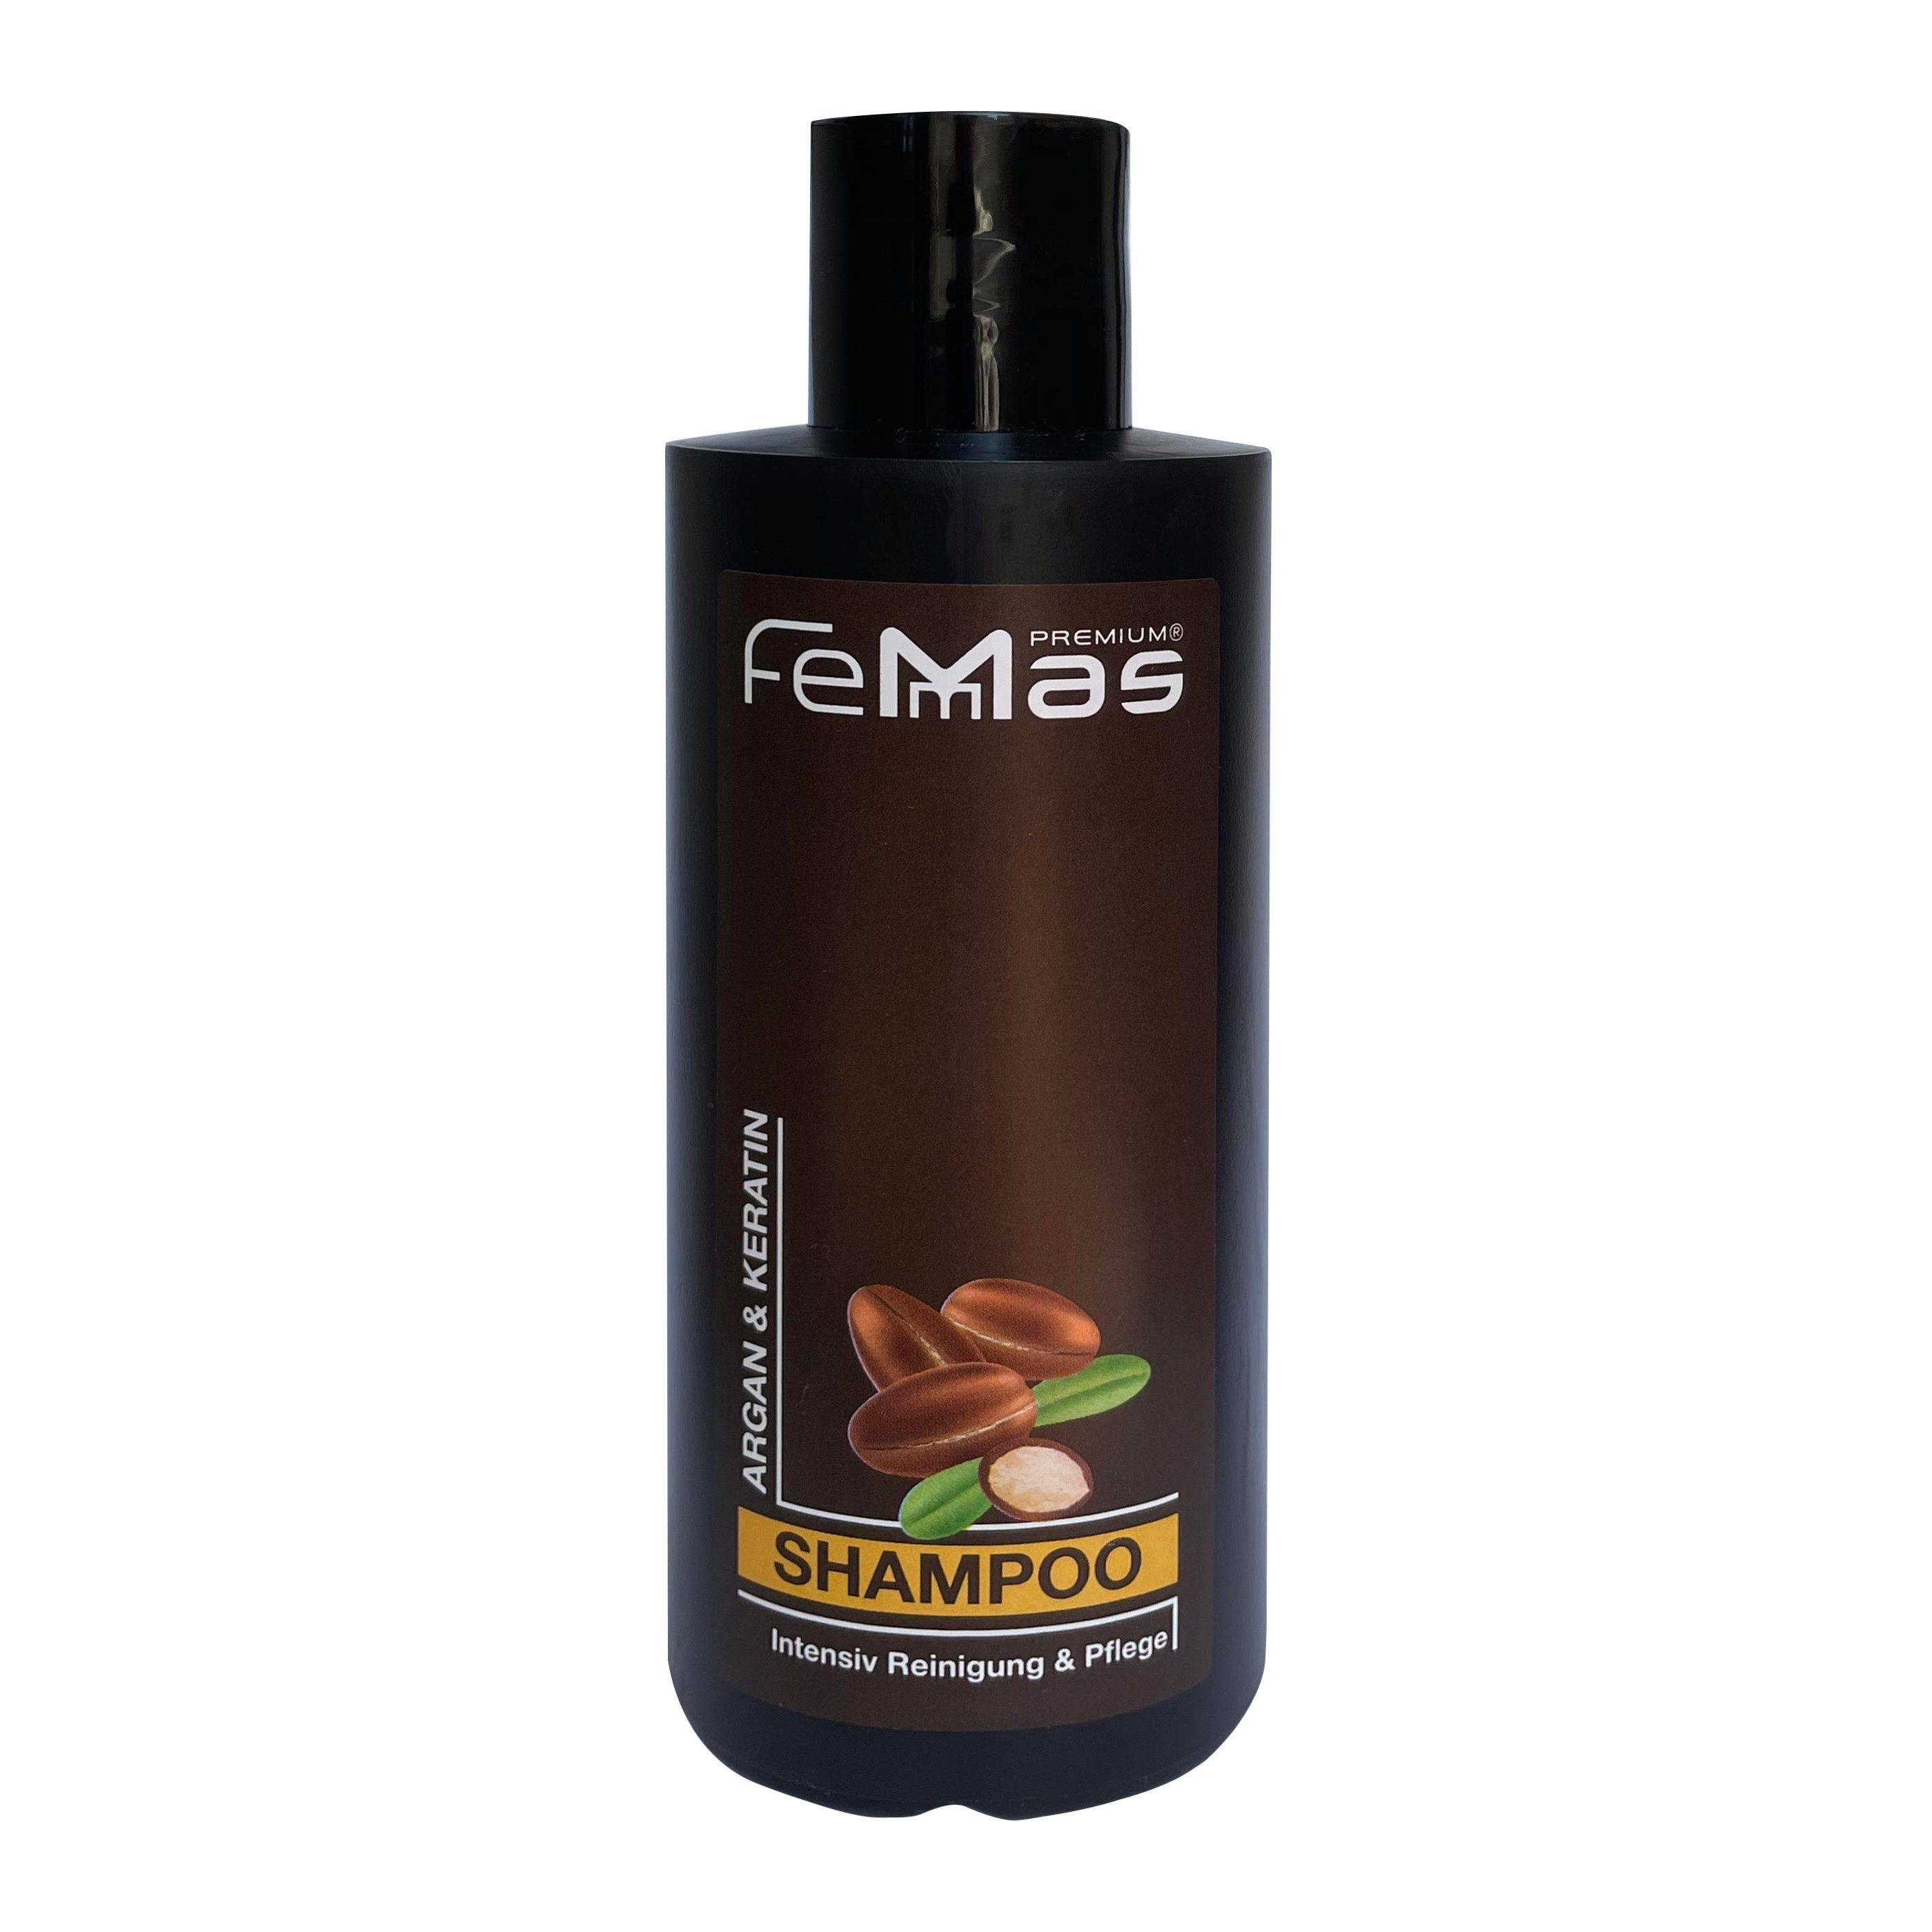 Femmas Premium Haarshampoo FemMas Argan & Keratin Shampoo 300ml